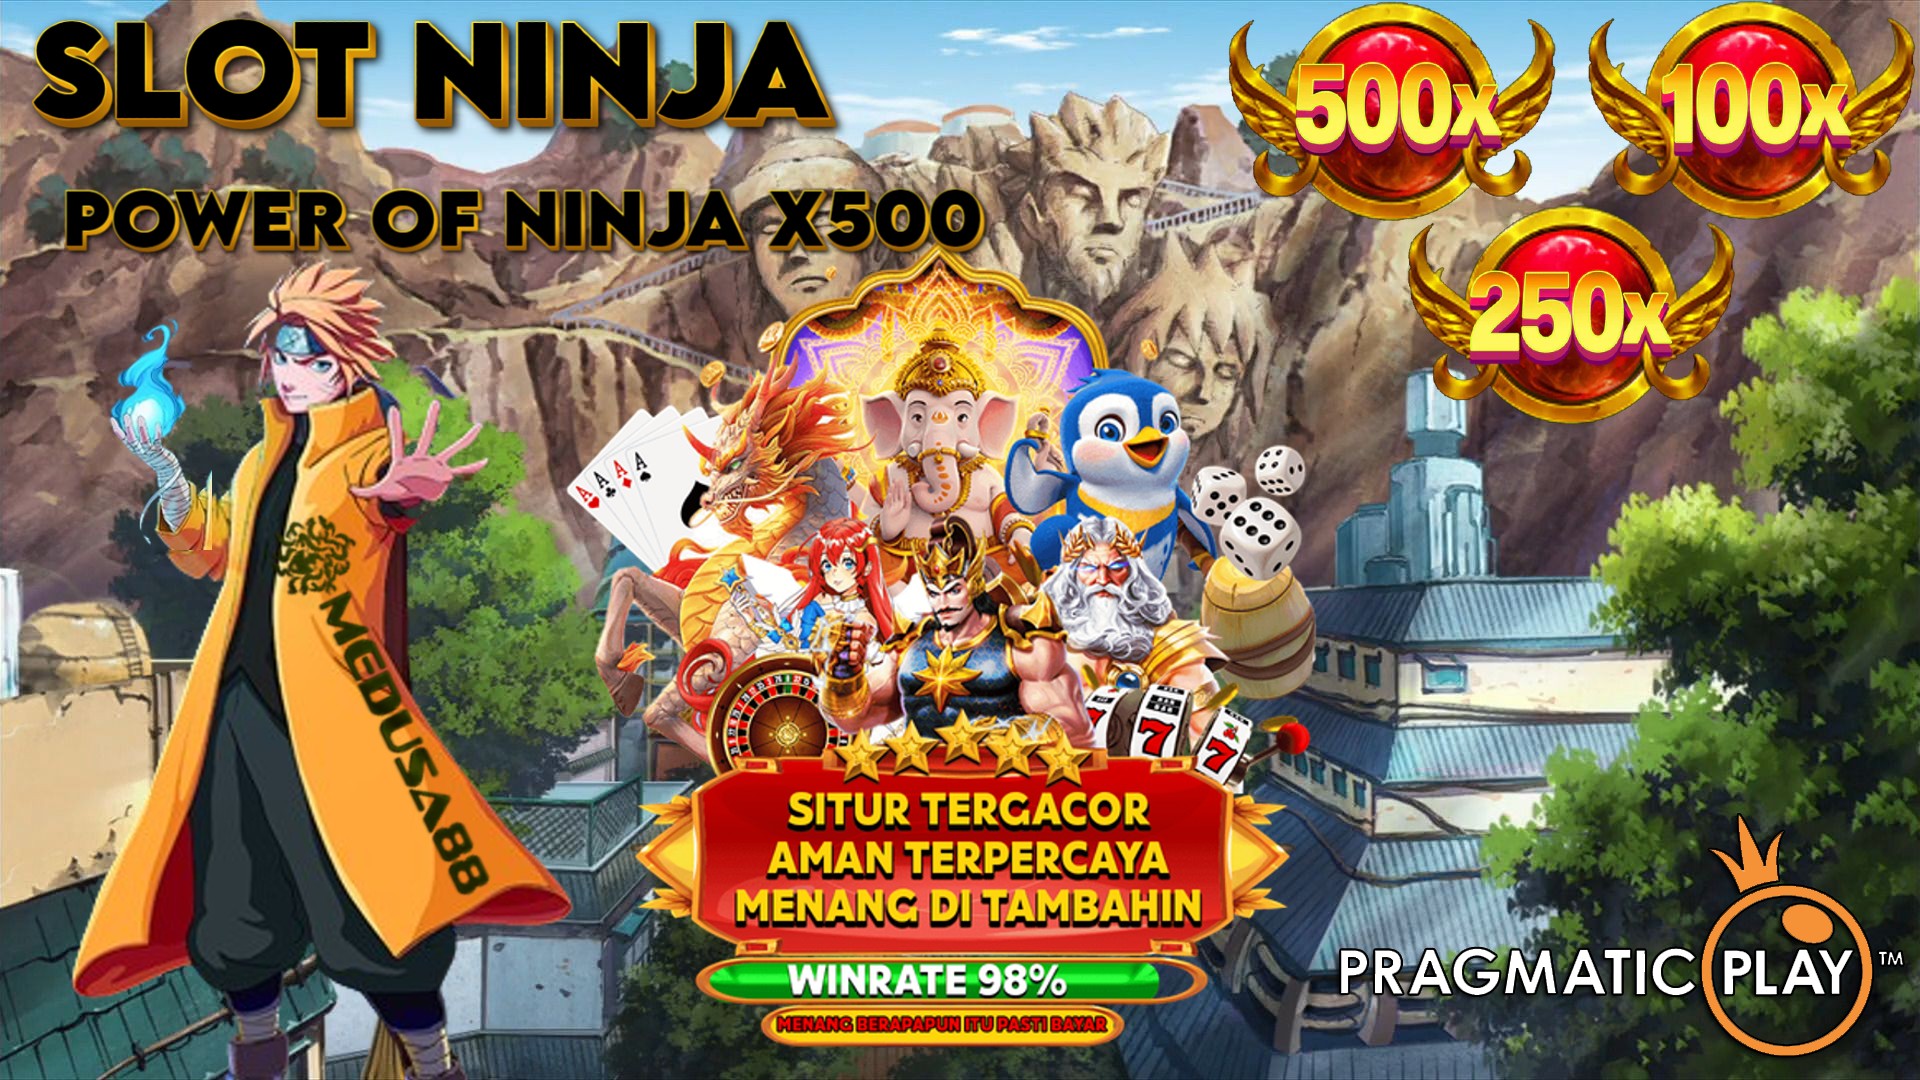 Slot Ninja Pragmatic Play: Daftar Situs Power Of Ninja x500 Slot Gacor Gampang Menang